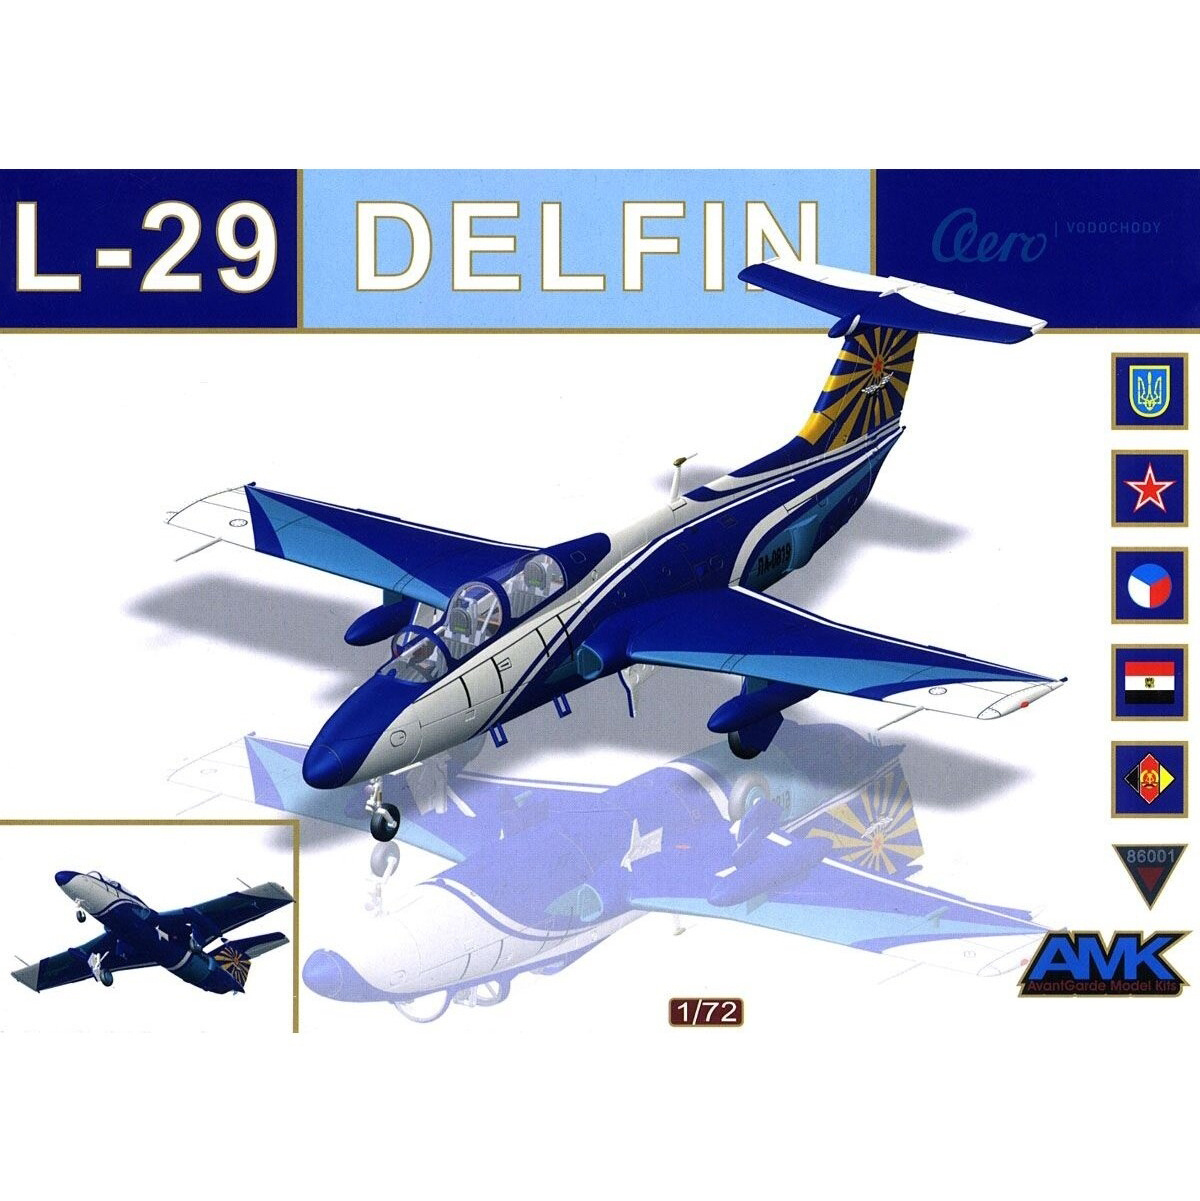 86001 AMK 1/72 Самолёт L-29 Delfin